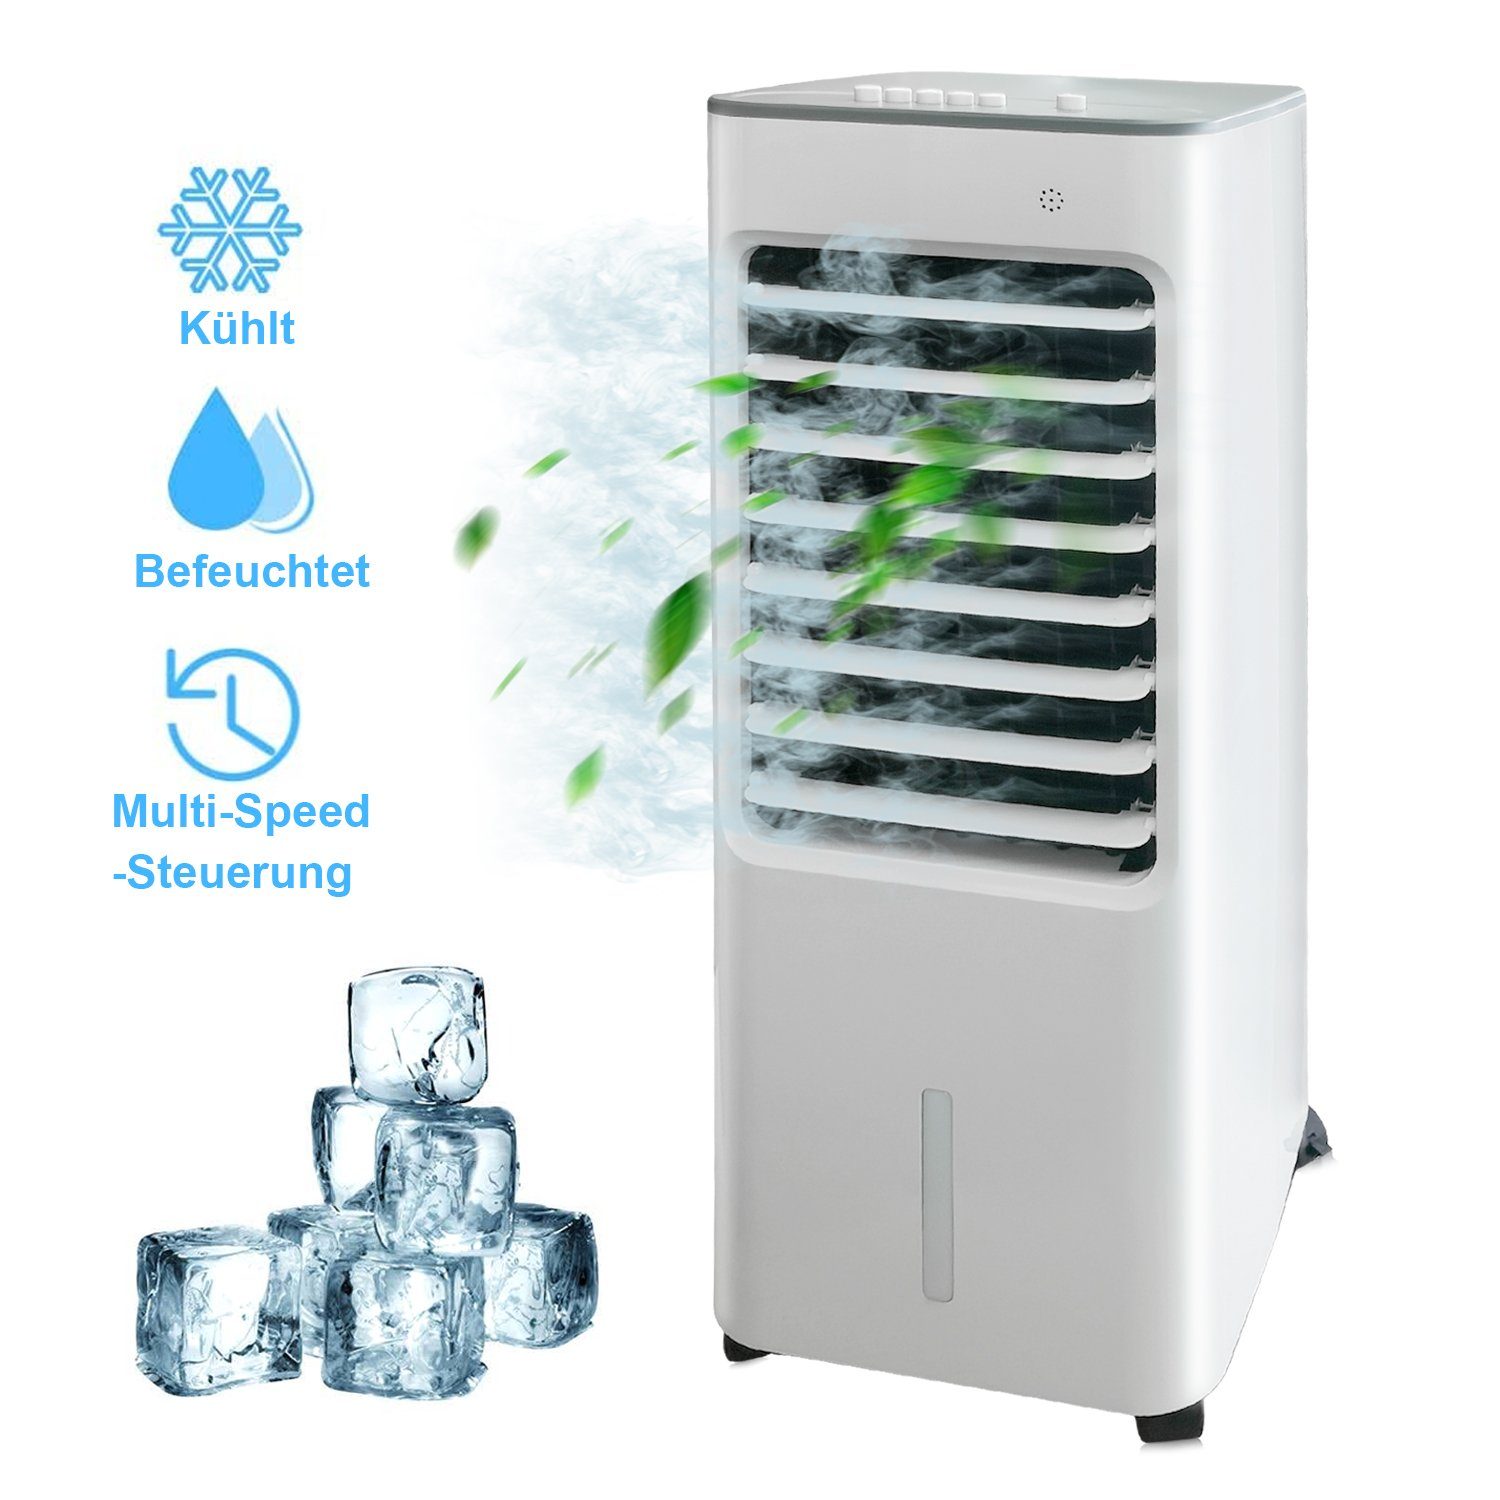 3in1 CHILLY Air Mini Kühlgerät Ventilator Klimagerät Lufterfrischer Luftkühler 